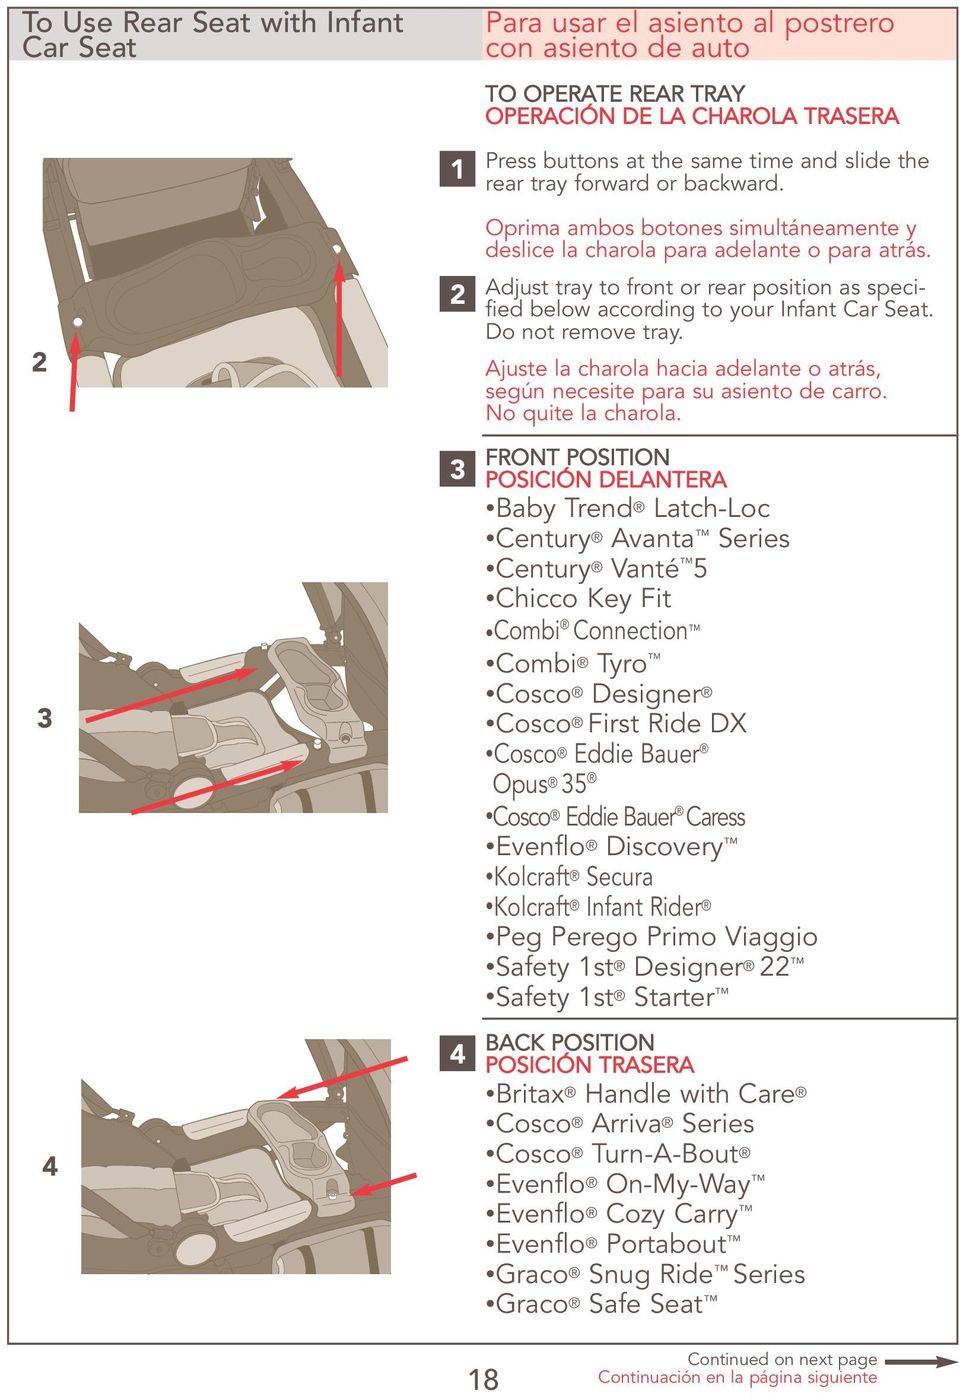 Adjust tray to front or rear position as specified below according to your Infant Car Seat. Do not remove tray. Ajuste la charola hacia adelante o atrás, según necesite para su asiento de carro.